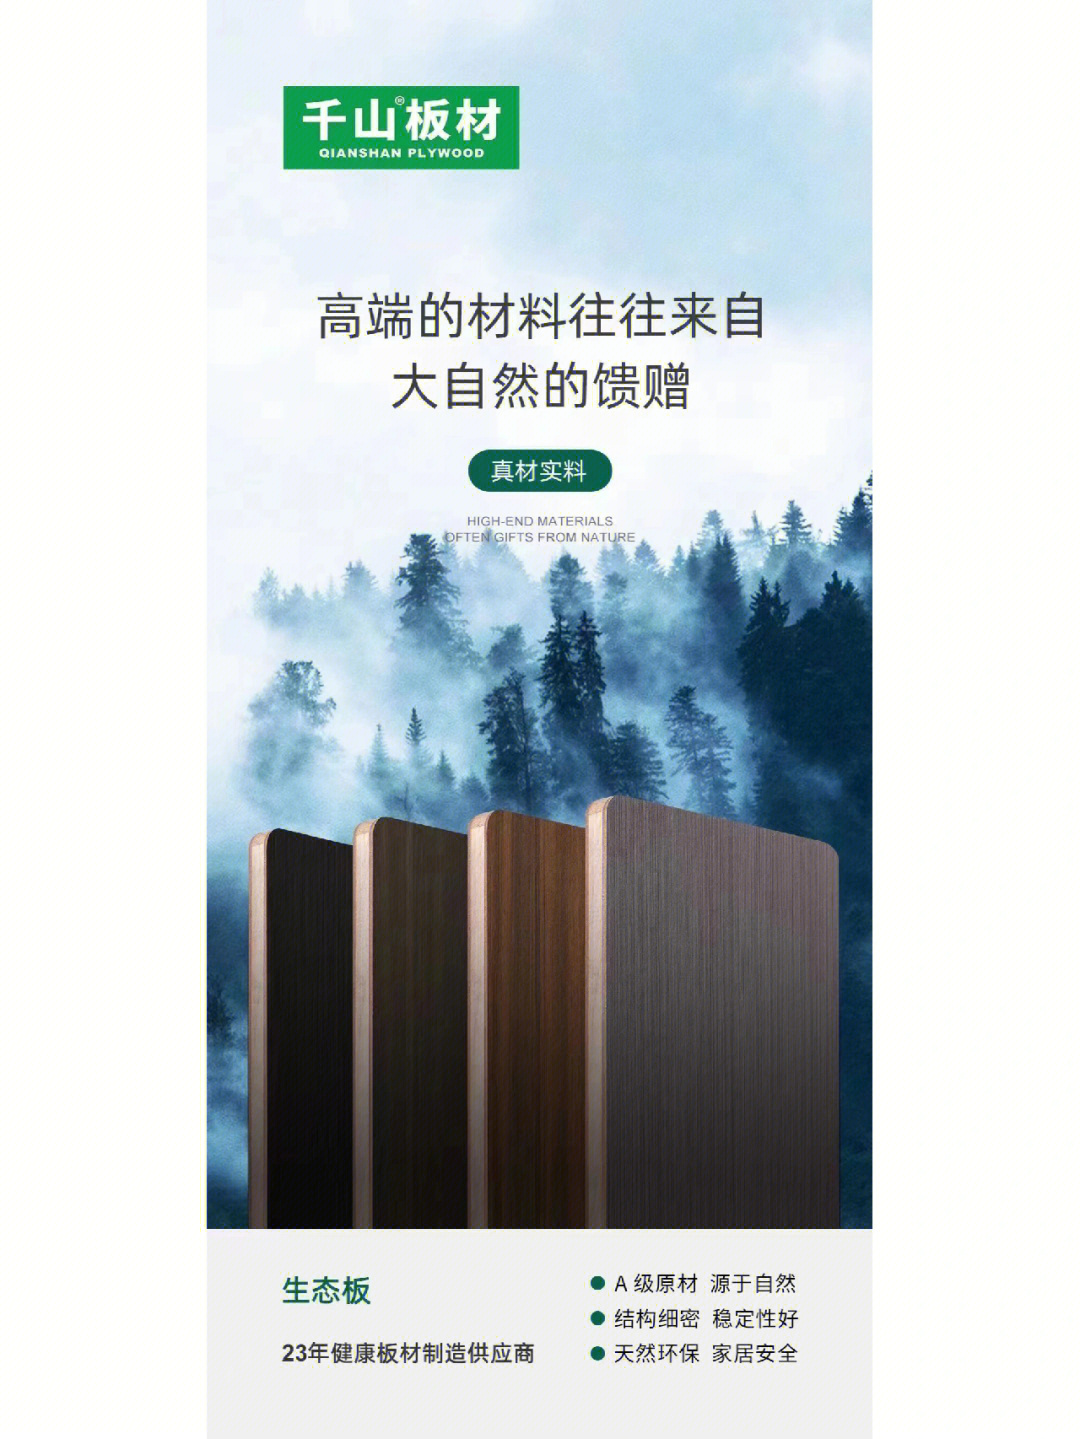 千山木业生态板图片